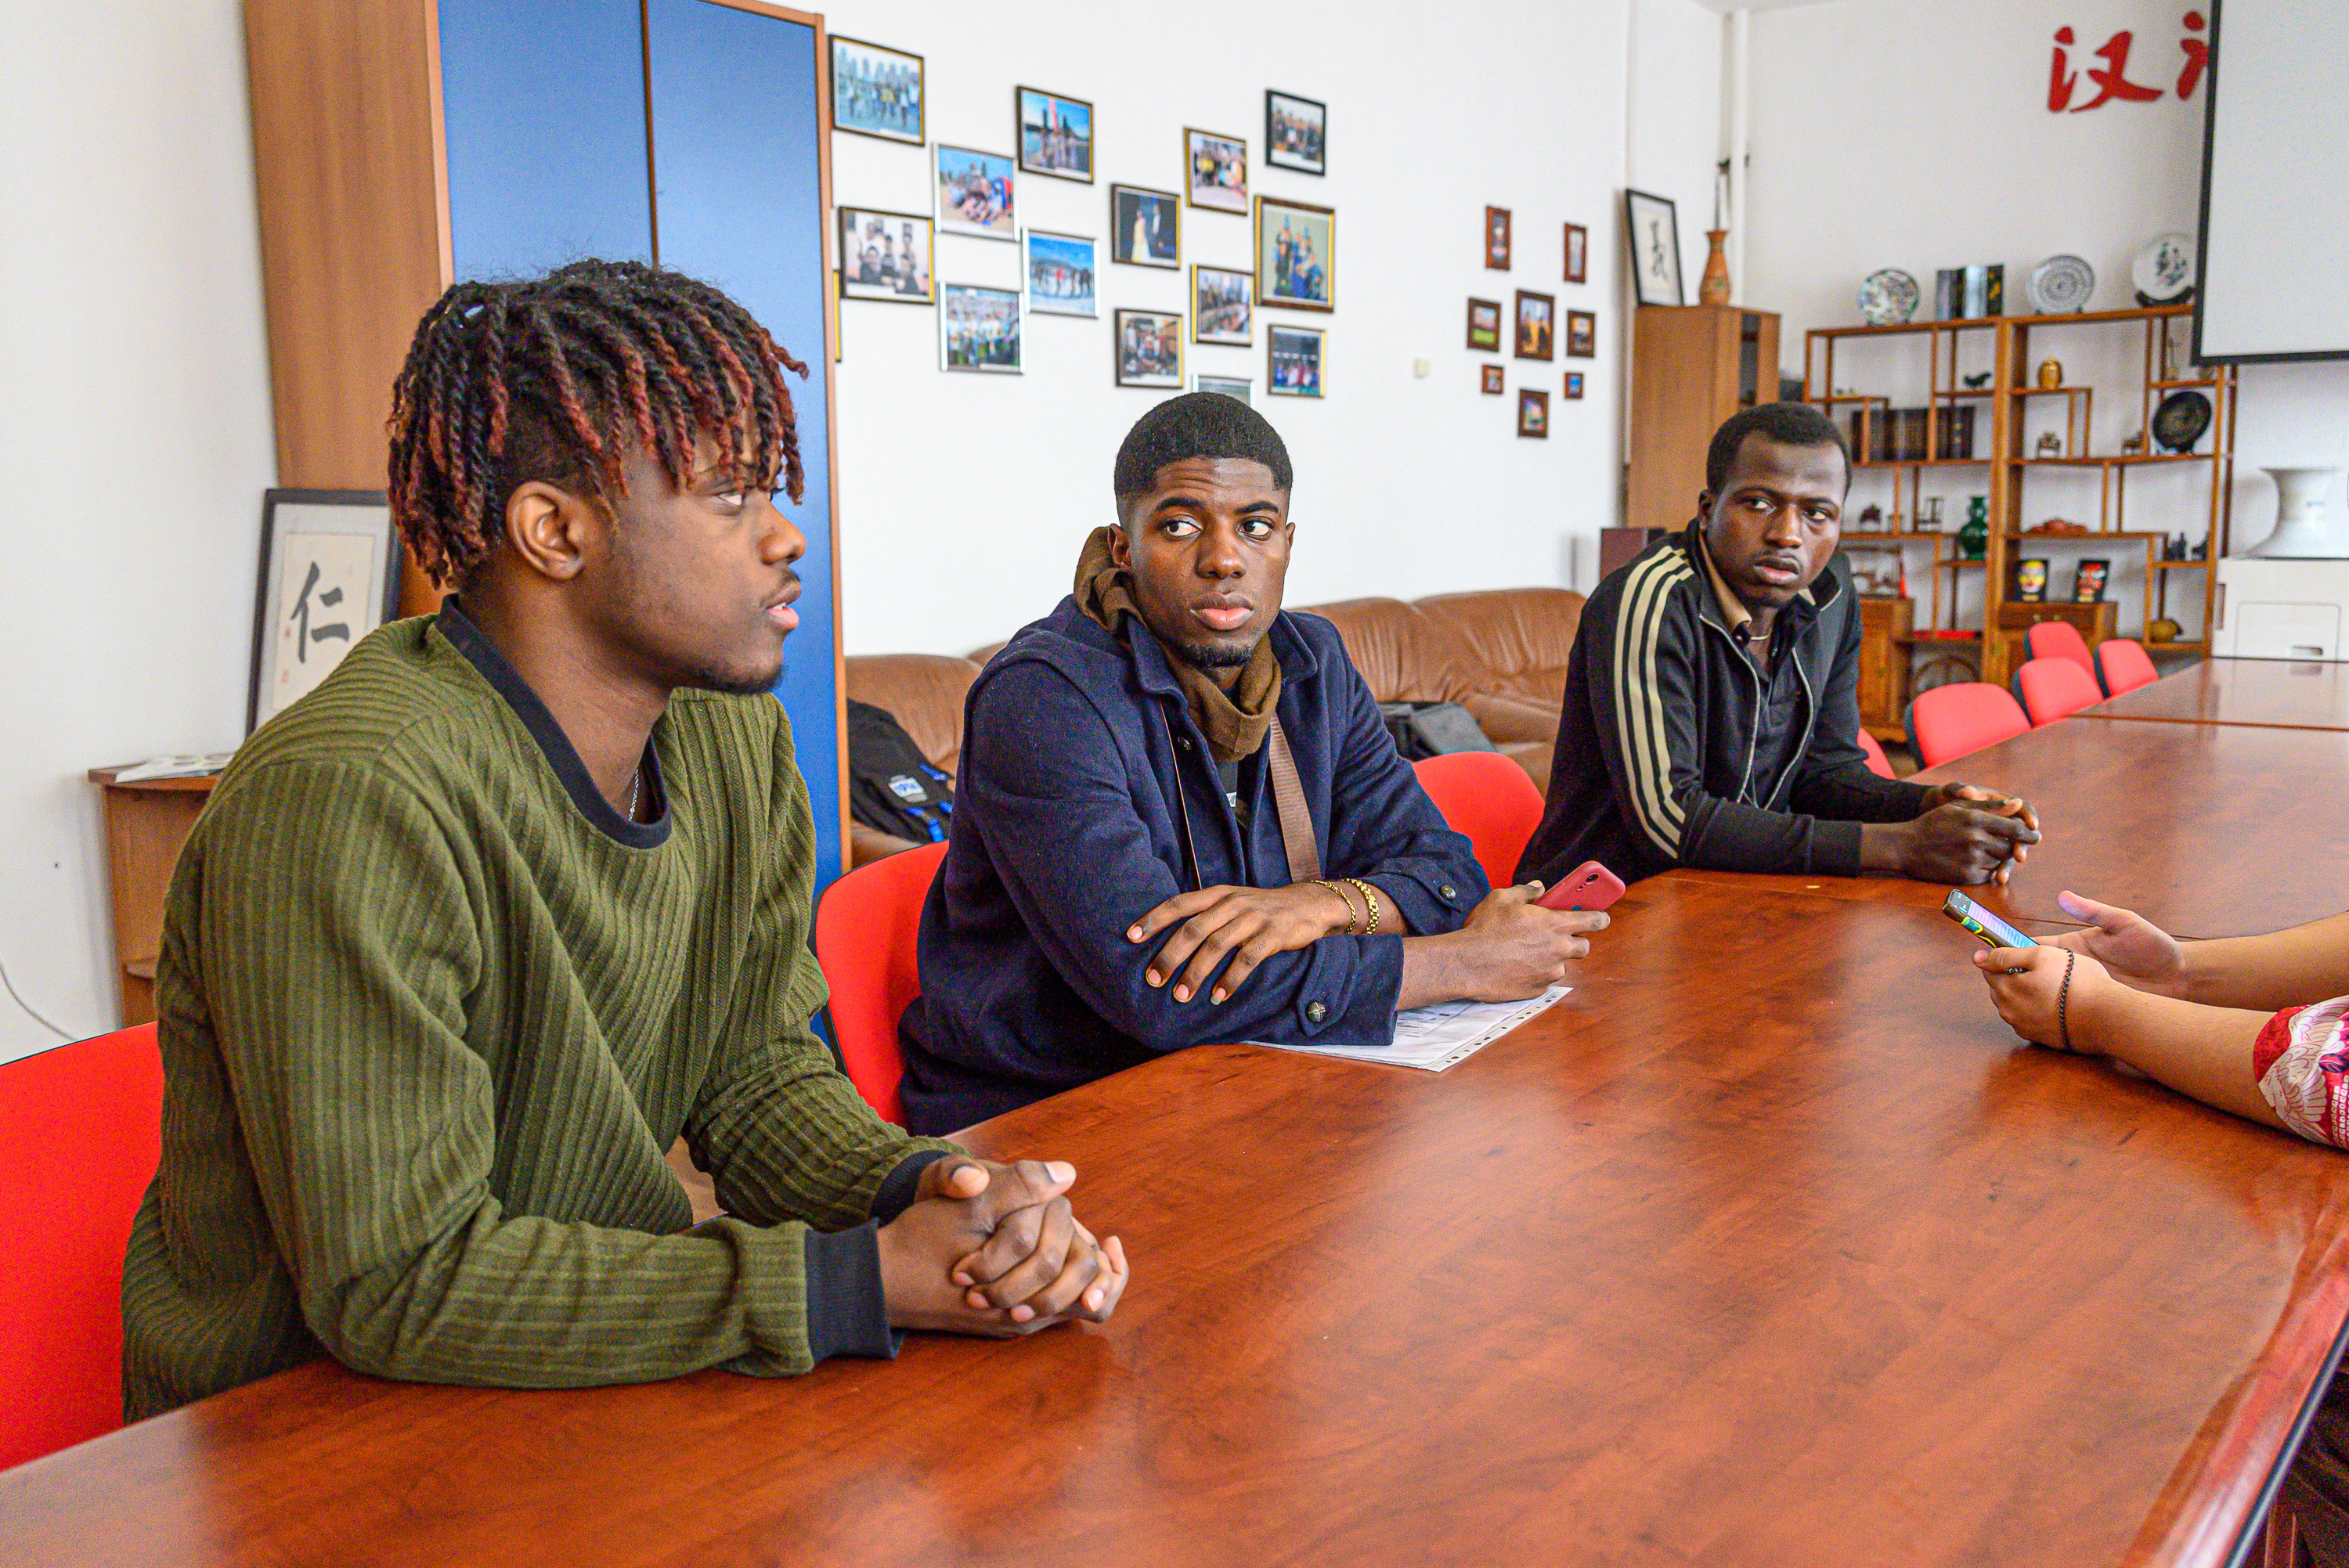 «Подходят и без спроса фоткаются». Студенты ЗабГУ из Камеруна и Гаити рассказали, что не так с читинцами